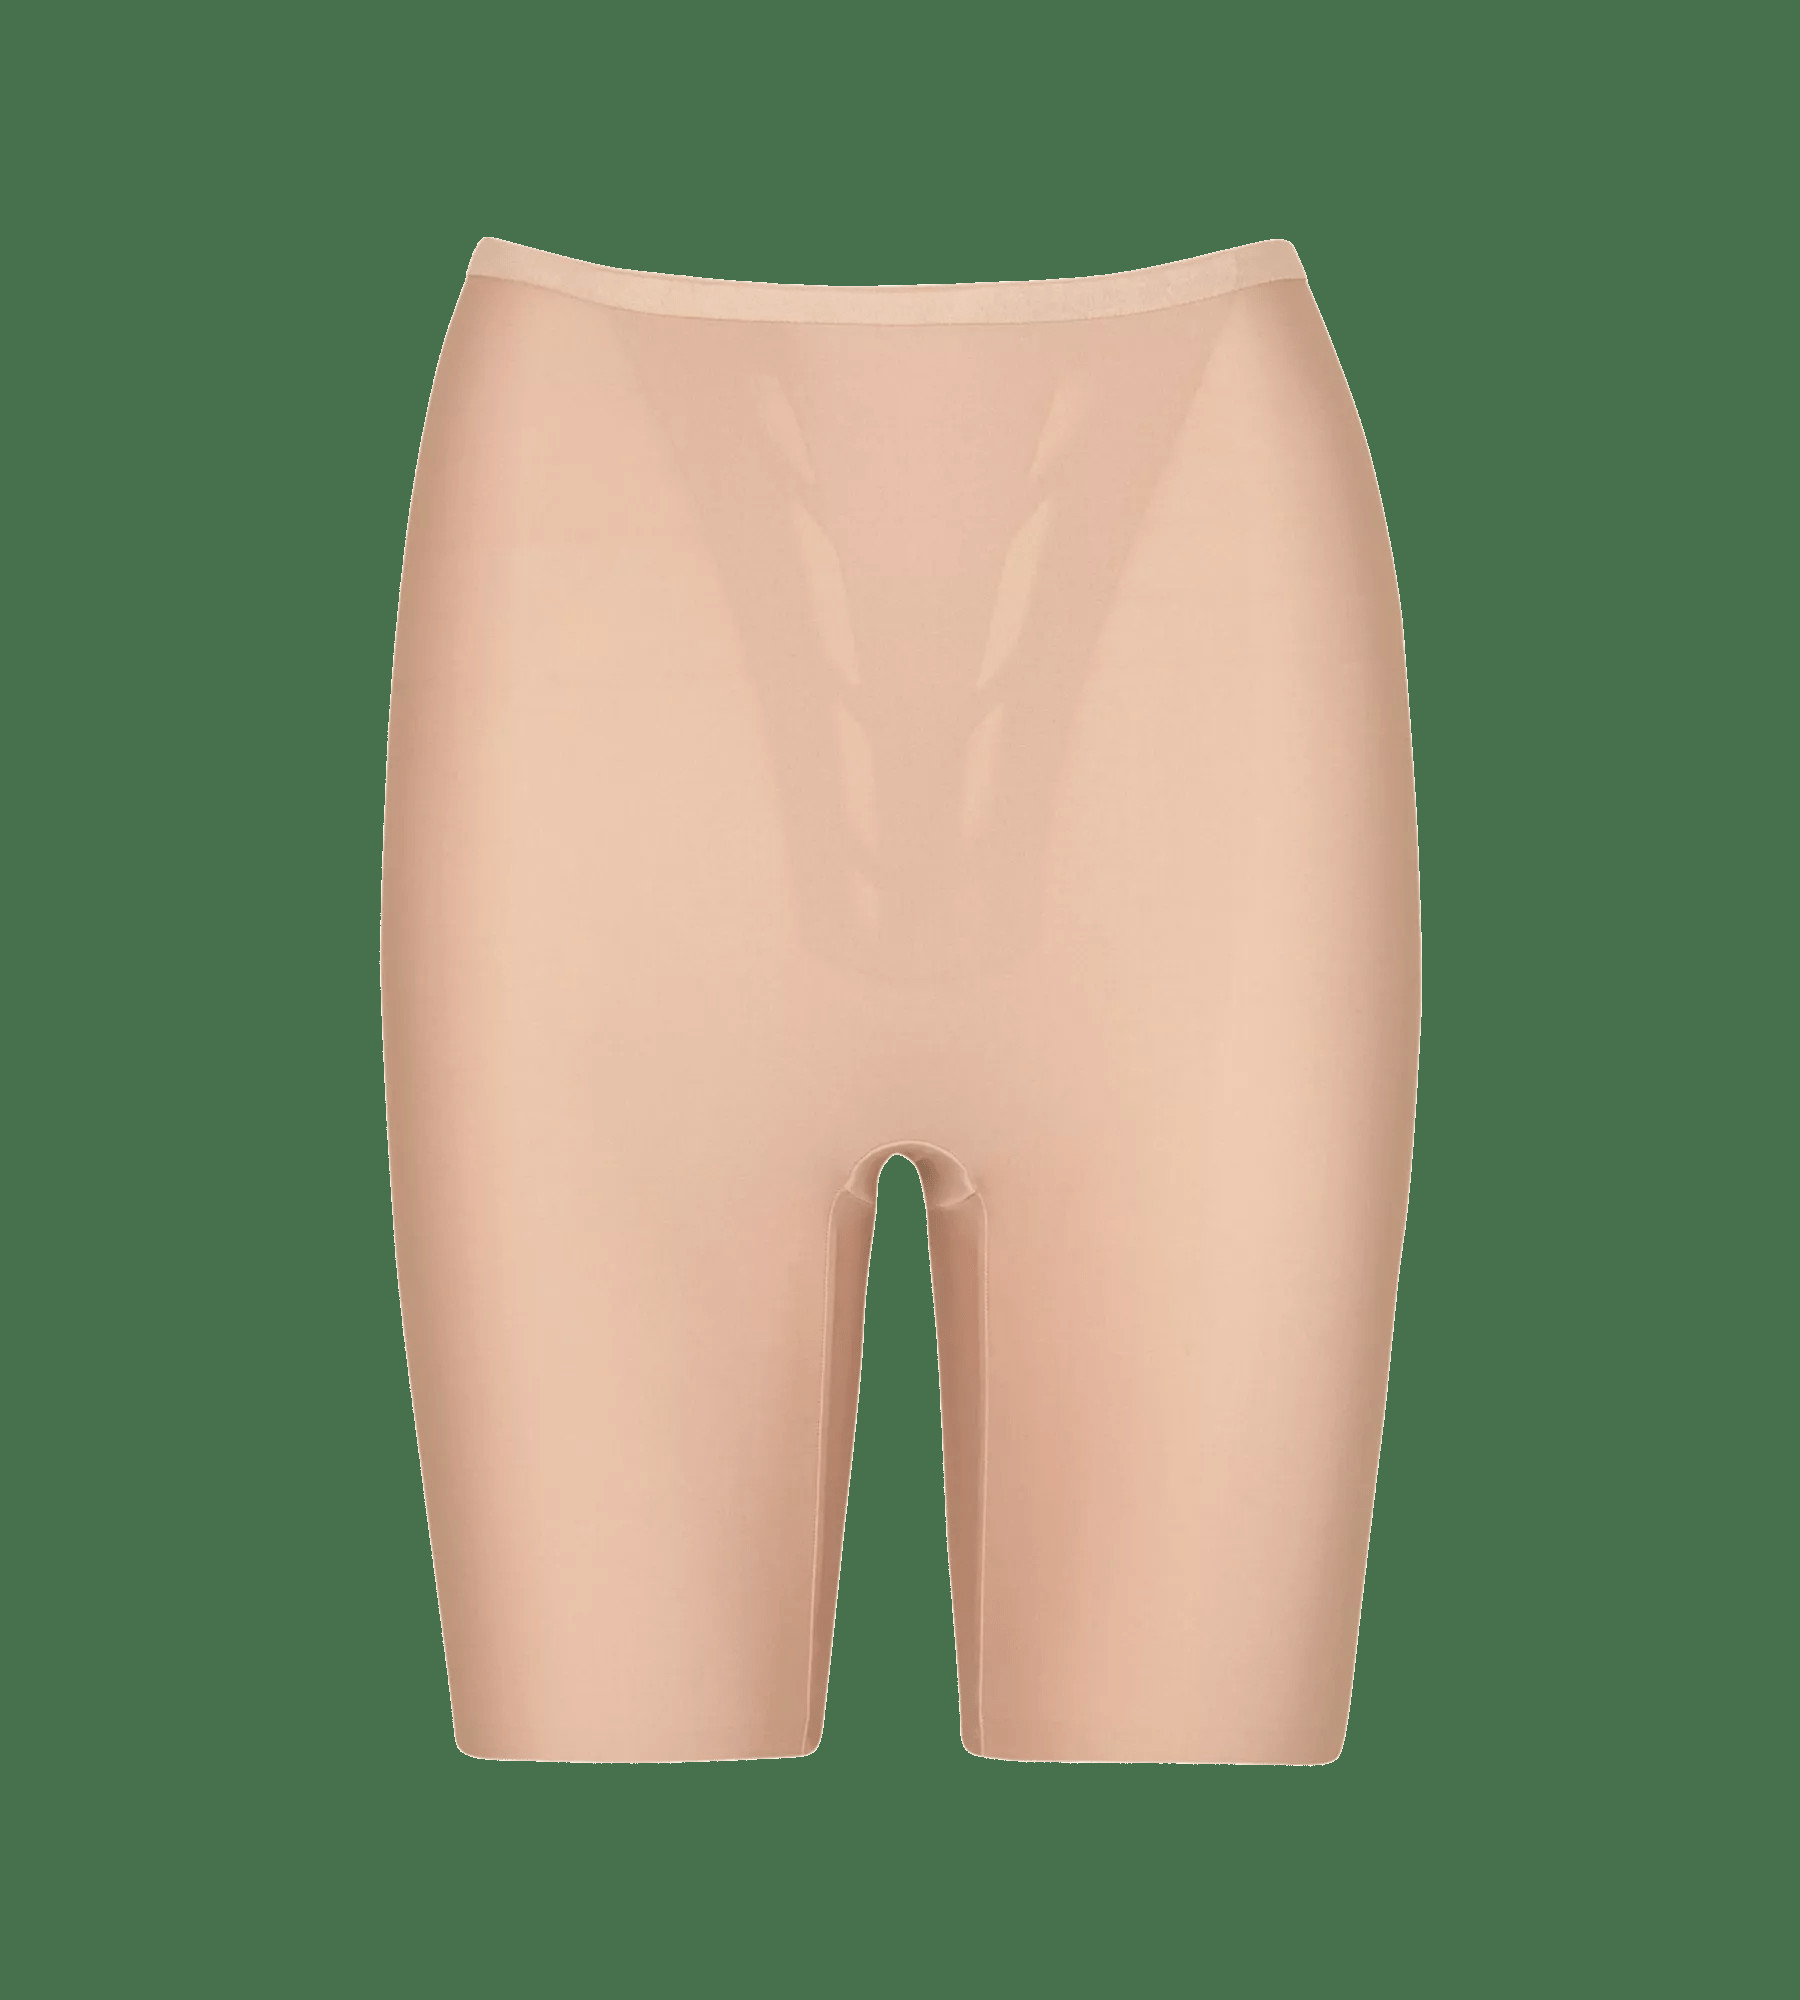 Stahovací kalhotky s Shape Smart Panty L BEIGE béžová BEIGE M model 18017622 - Triumph